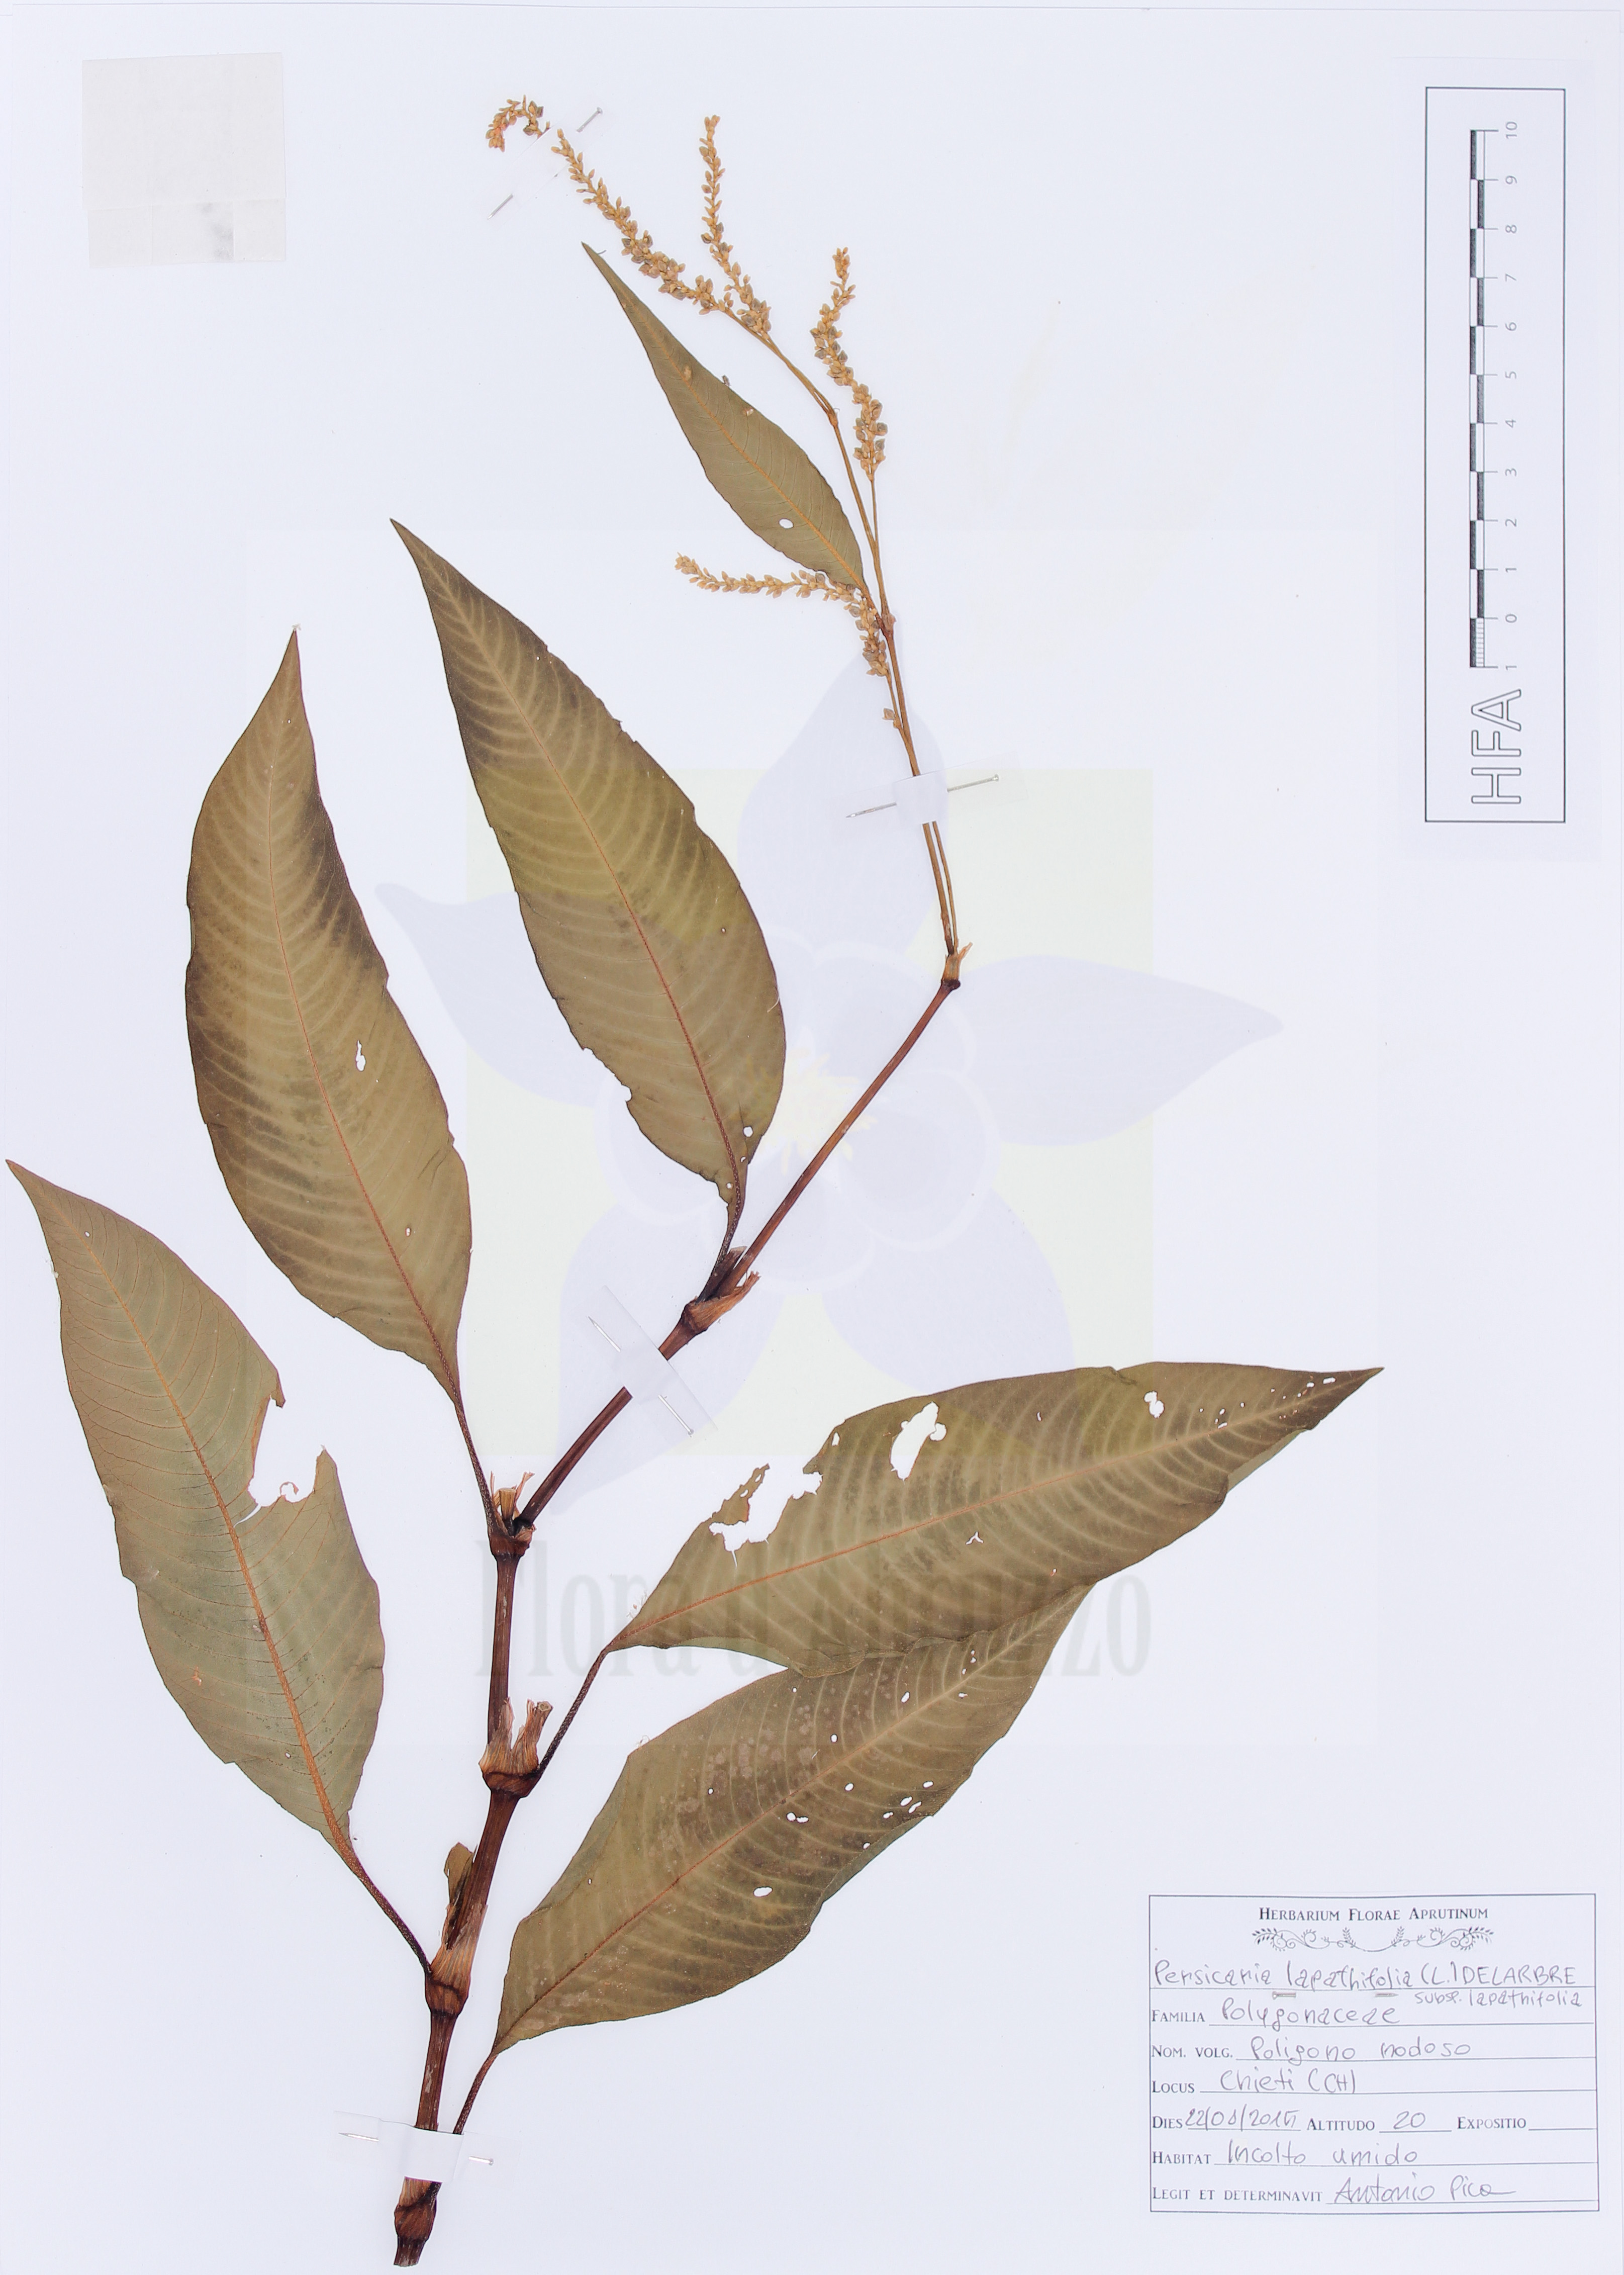 Persicaria lapathifolia (L.) Delarbre subsp. lapathifolia